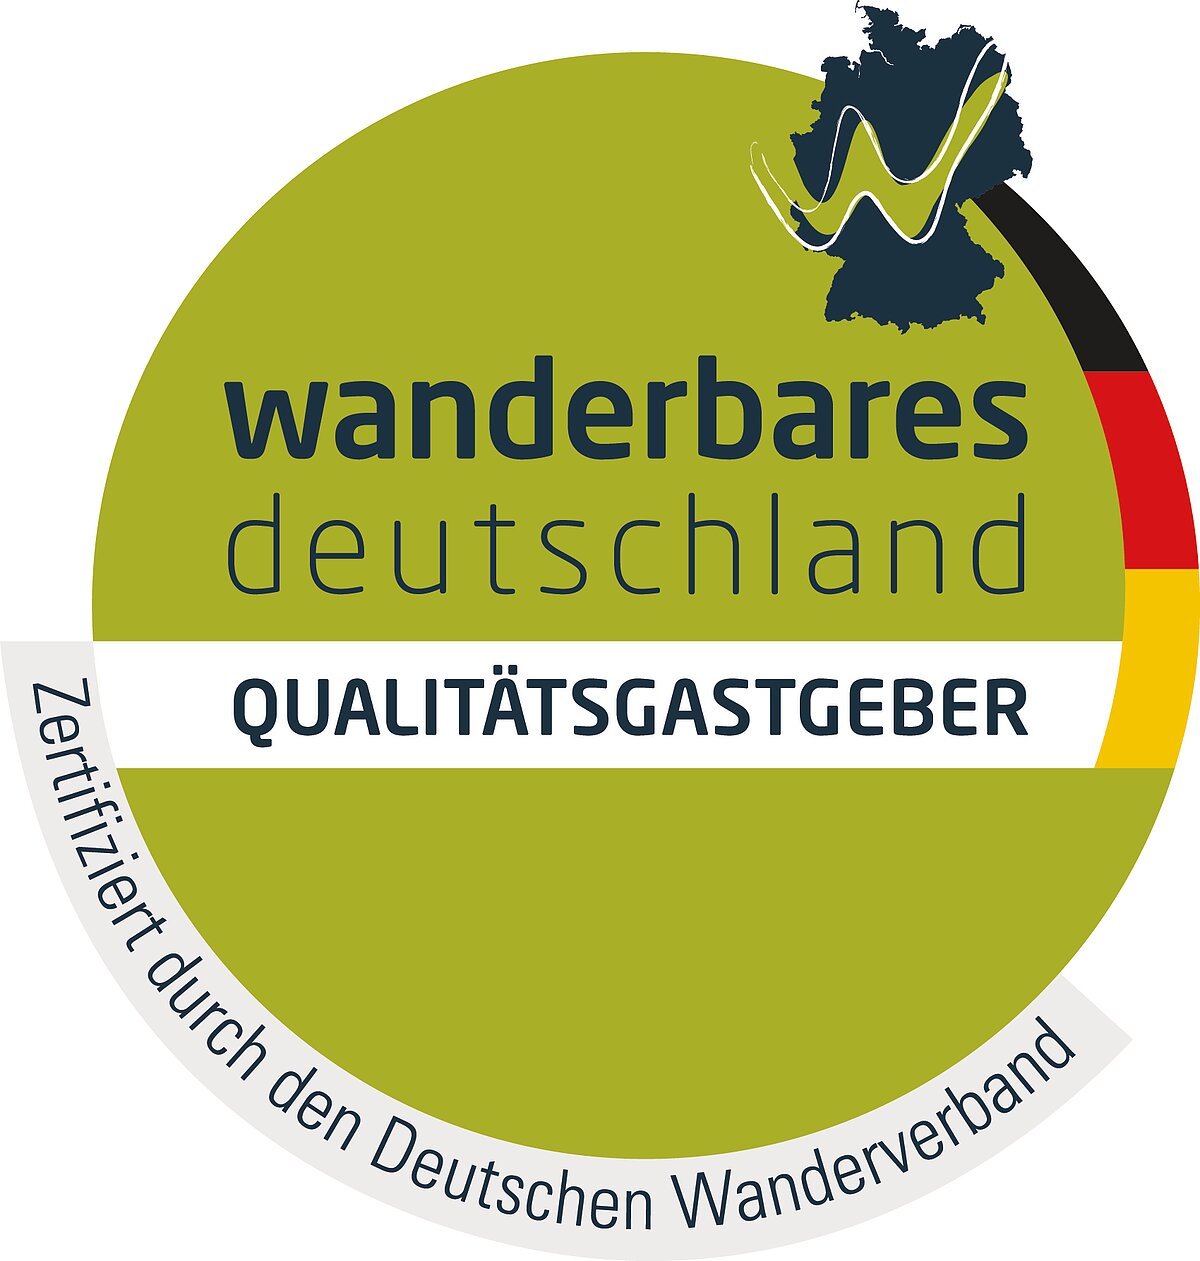 Zertifizierungslogo "wanderbares deutschland - QUALITÄTSGASTGEBER"